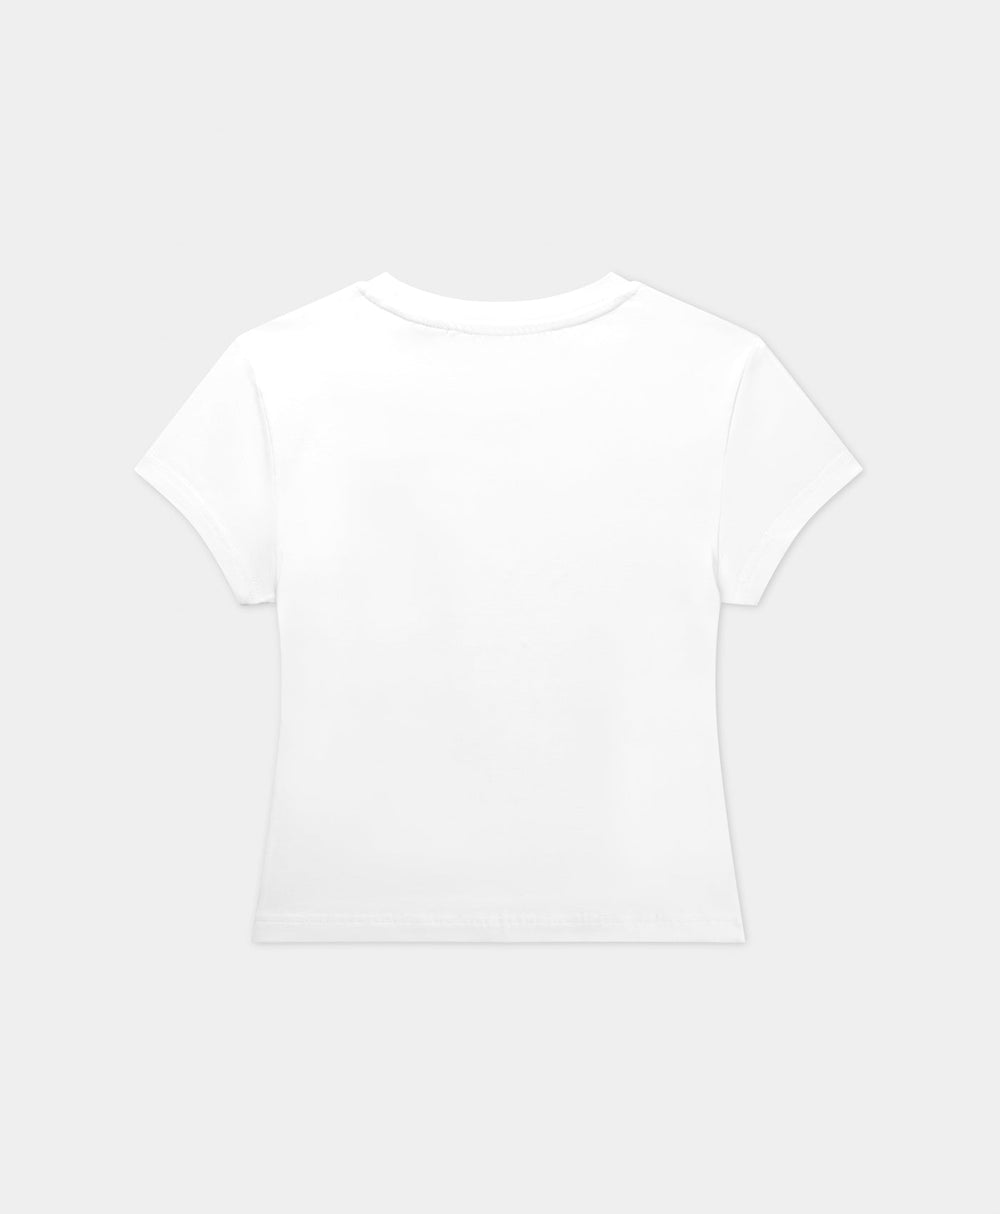 DP - White Logotype Cropped T-Shirt - Packshot - Rear